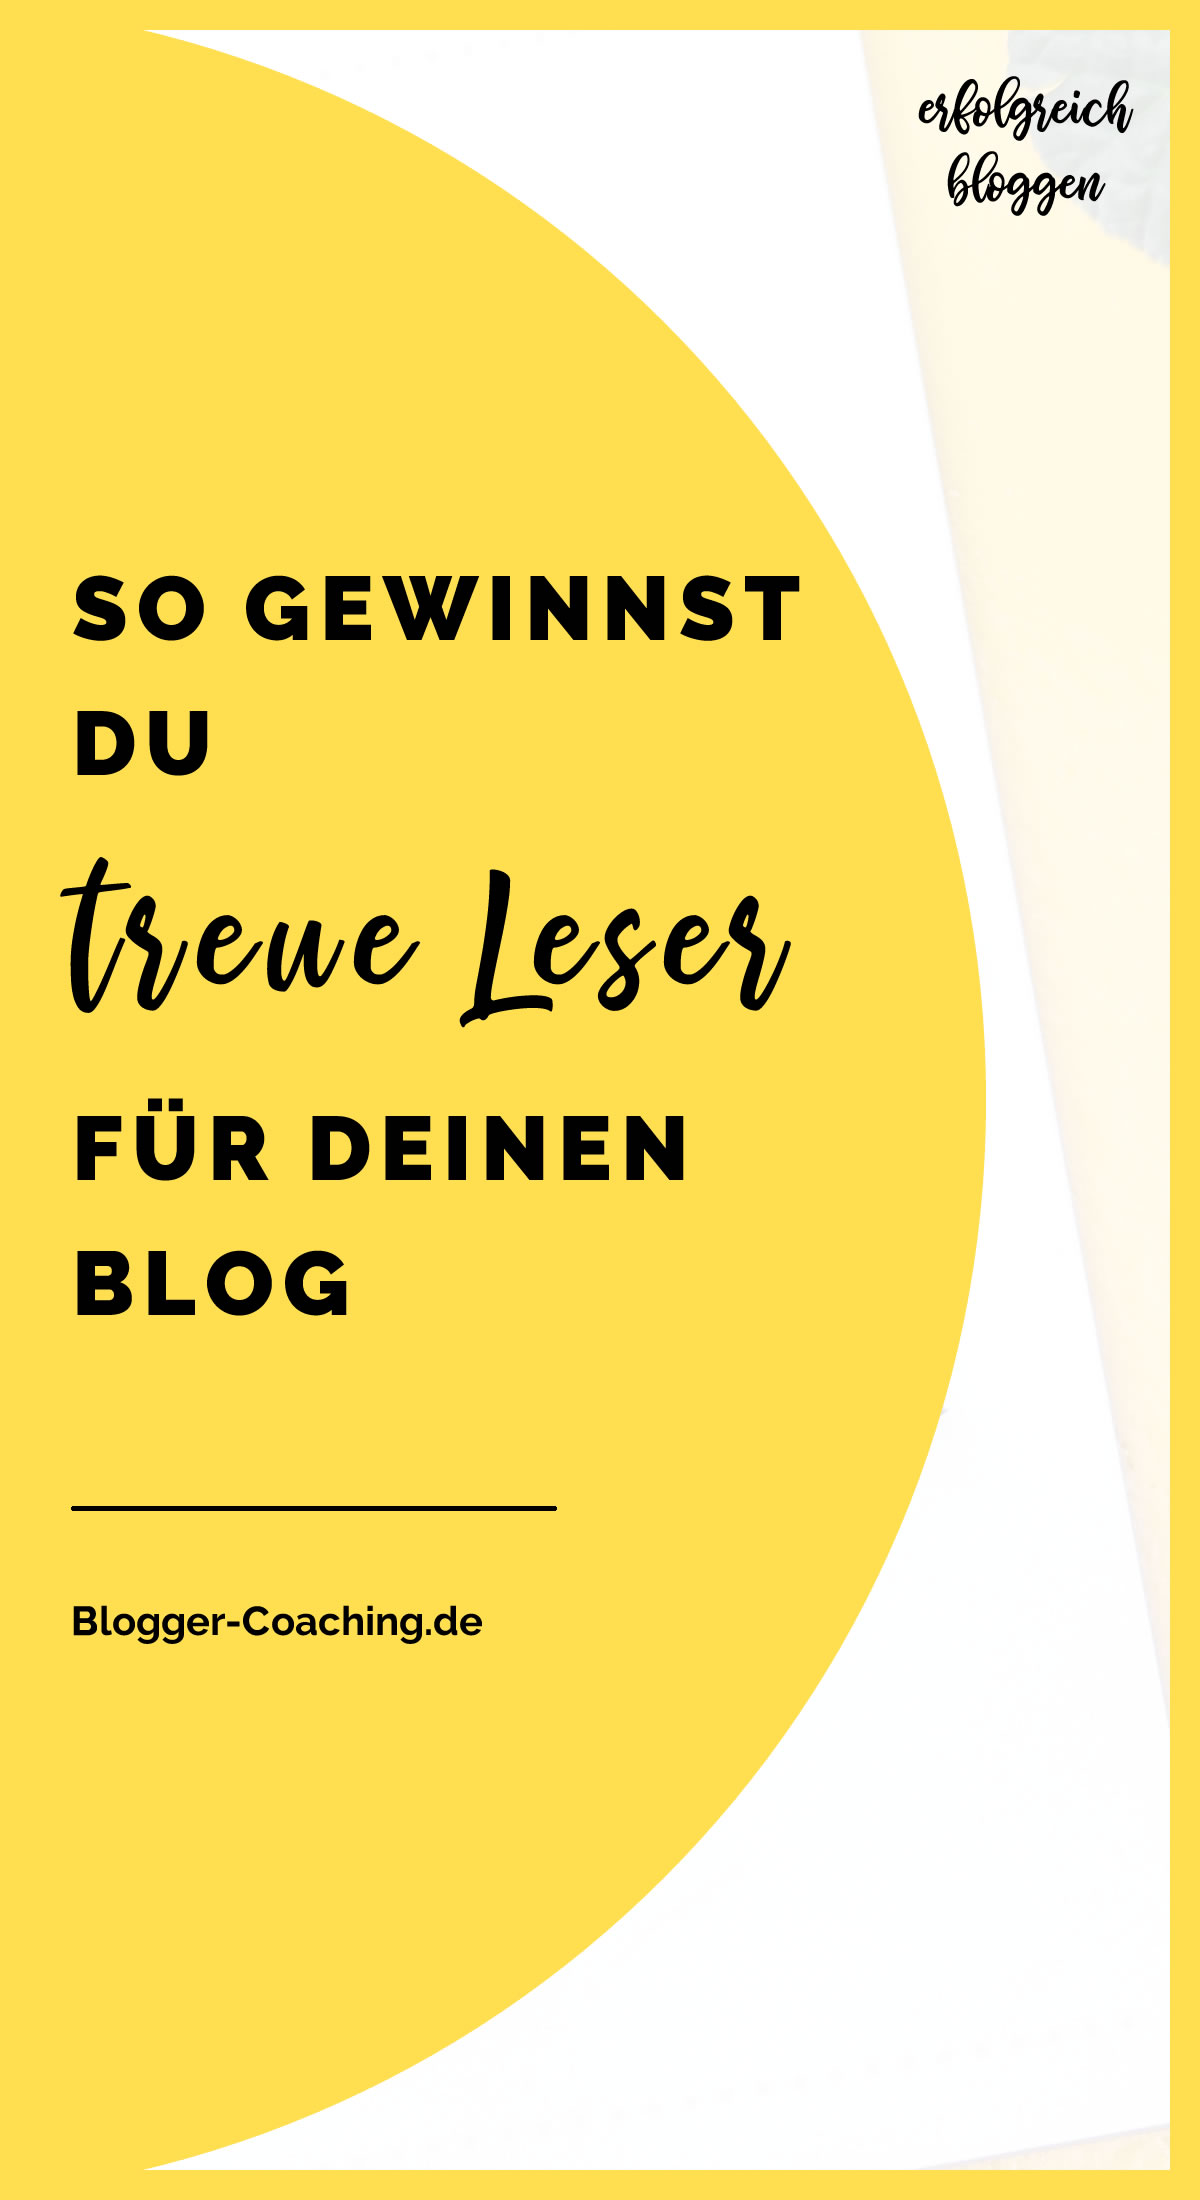 Fluch oder Segen: Die Blog-Nische - Wofür ist sie wirklich gut? | Blogger-Coaching.de - Dein Weg zum Blog-Erfolg #blogger #erfolg